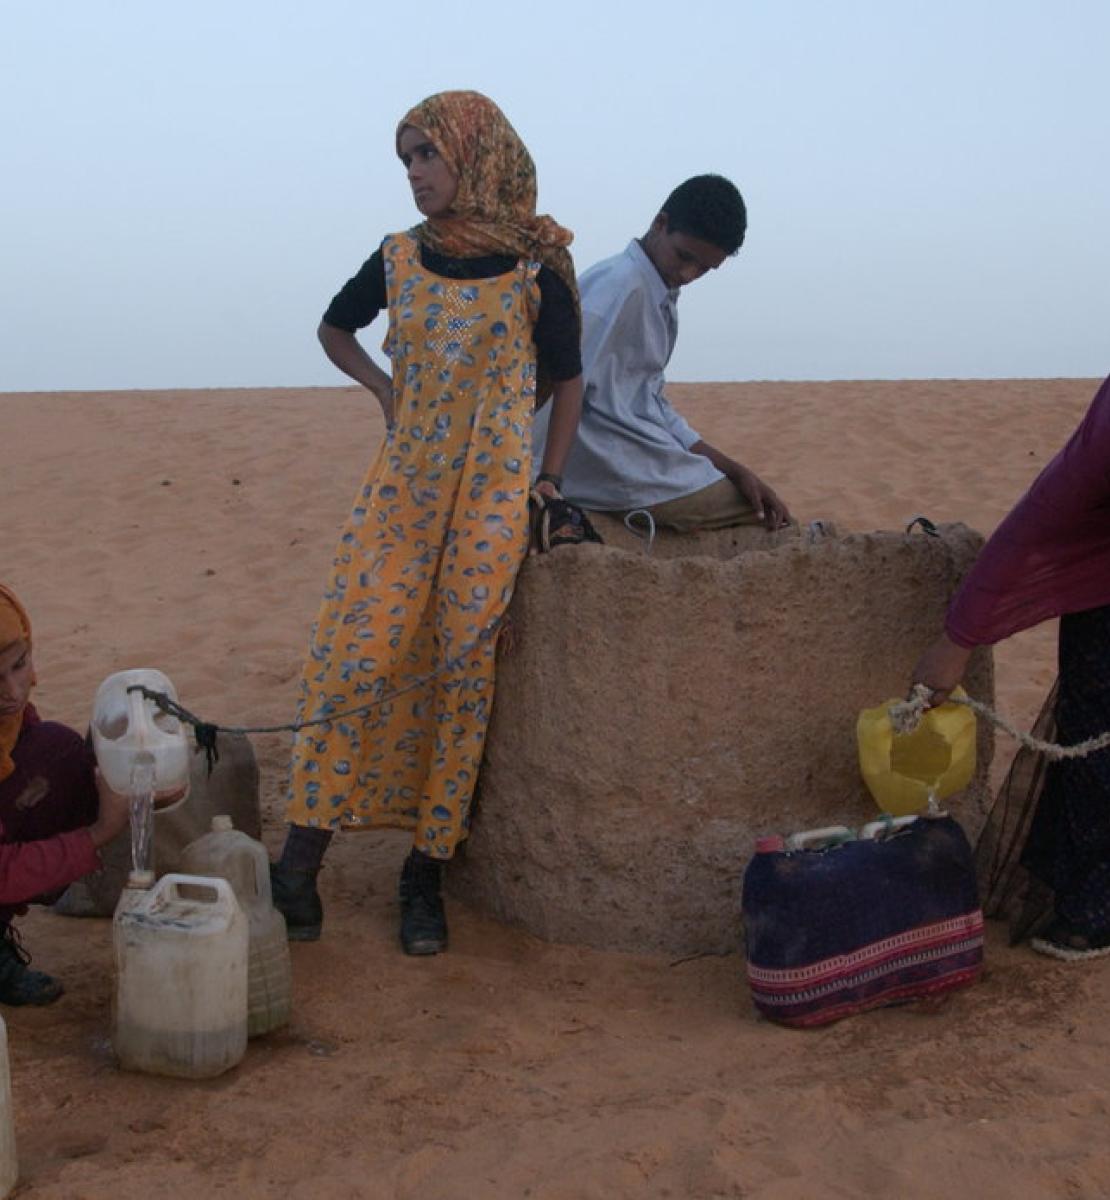 En un desierto de arena roja, cuatro jóvenes intentan llenar jarras de agua de un pozo.